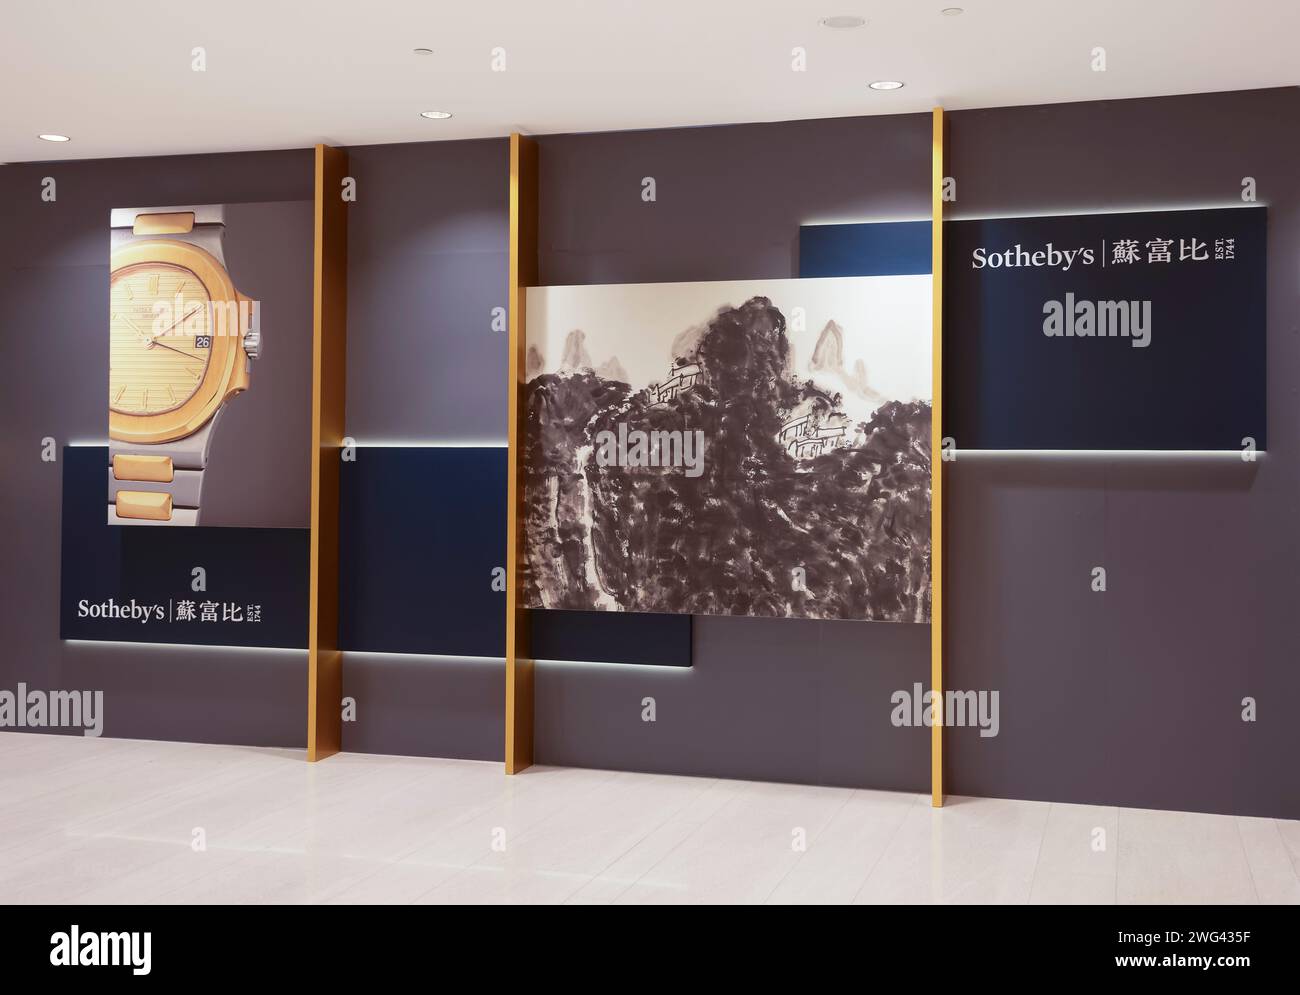 Sotheby's, Hong Kong, China. Stock Photo